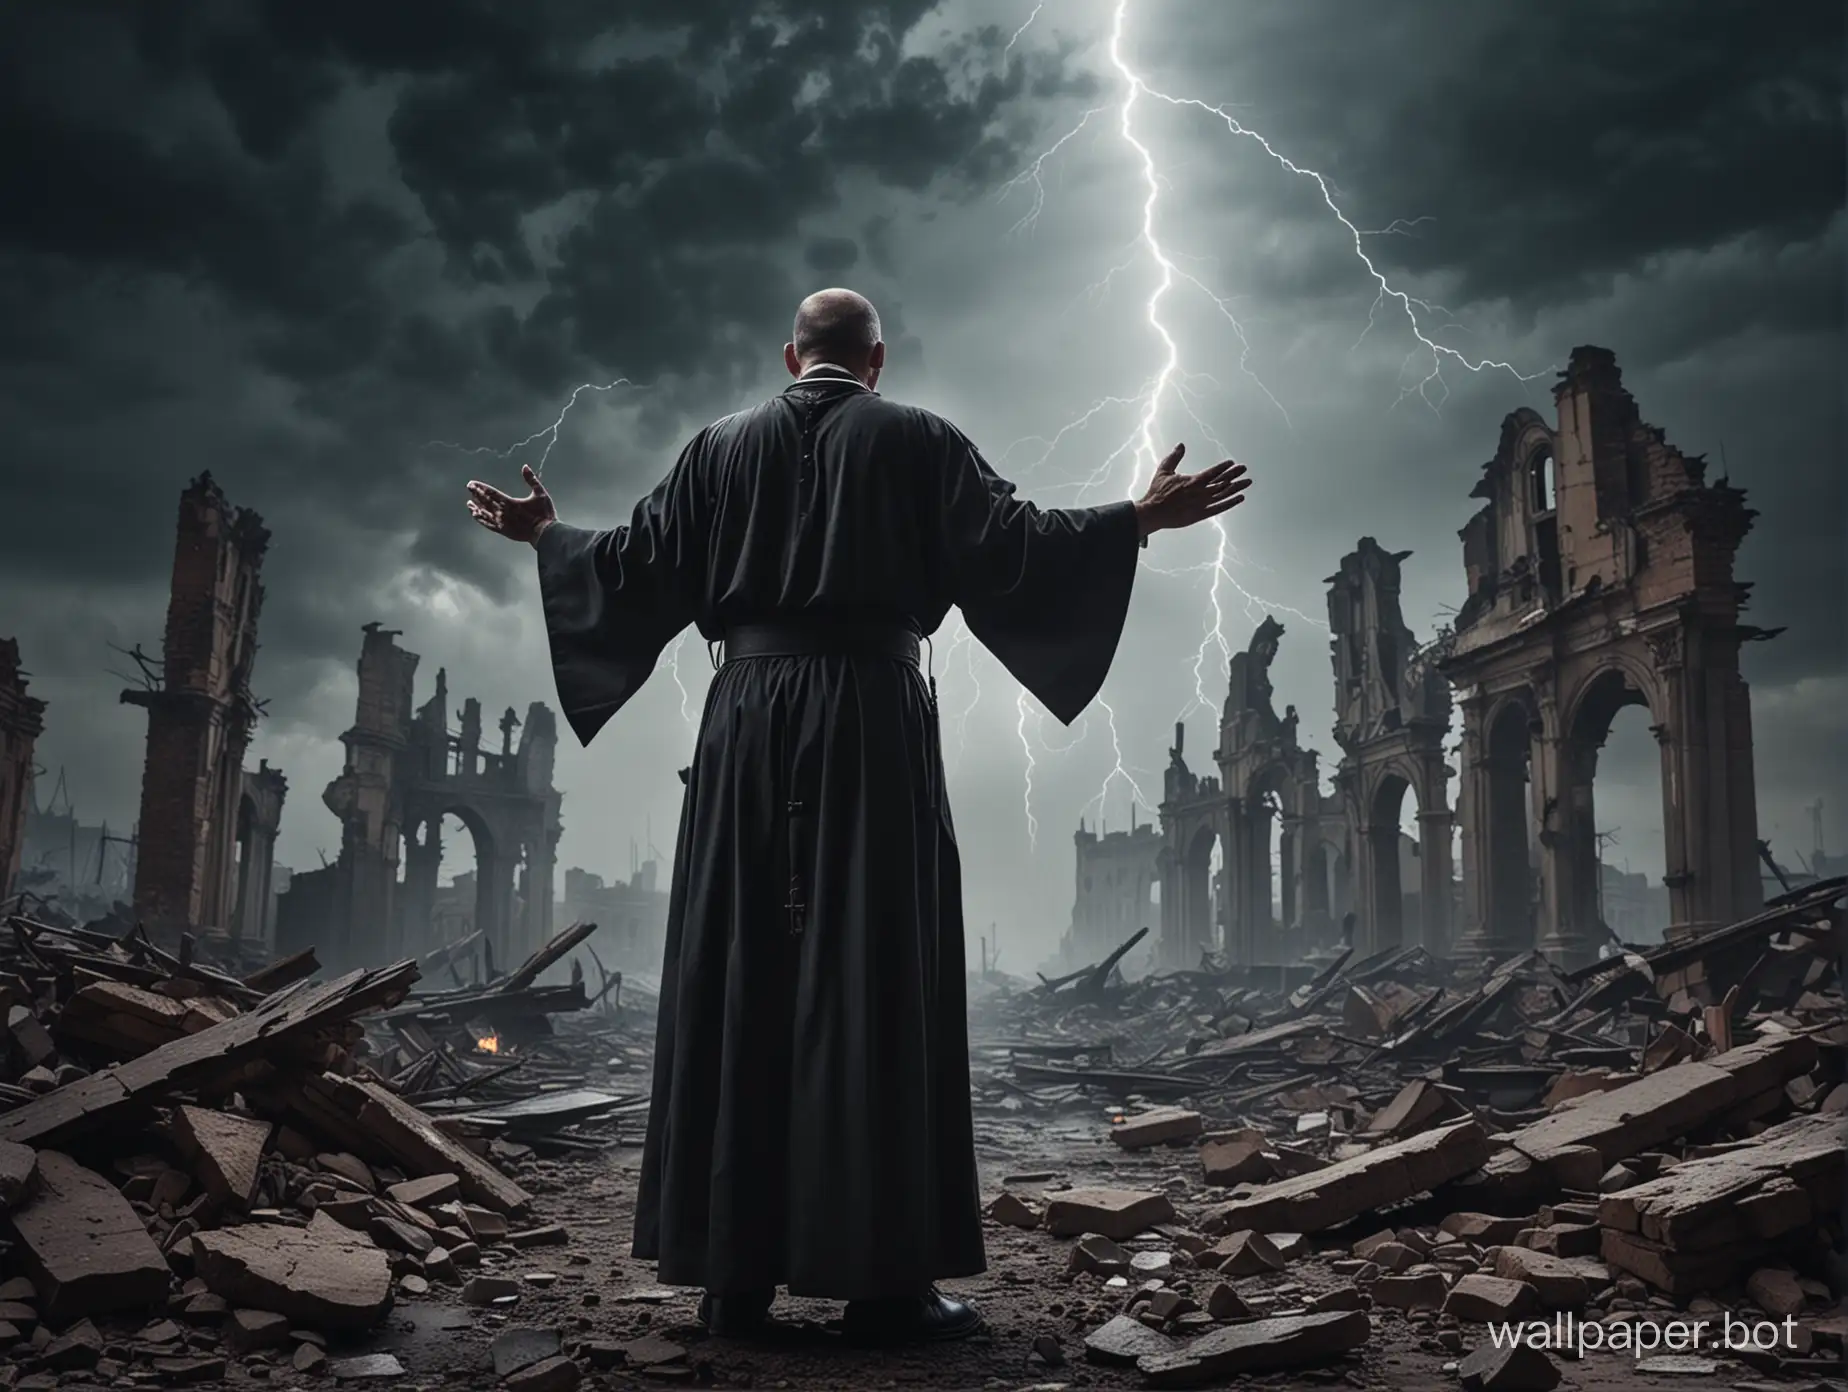 Priest-Praying-Amidst-Devastation-in-a-Darkened-City